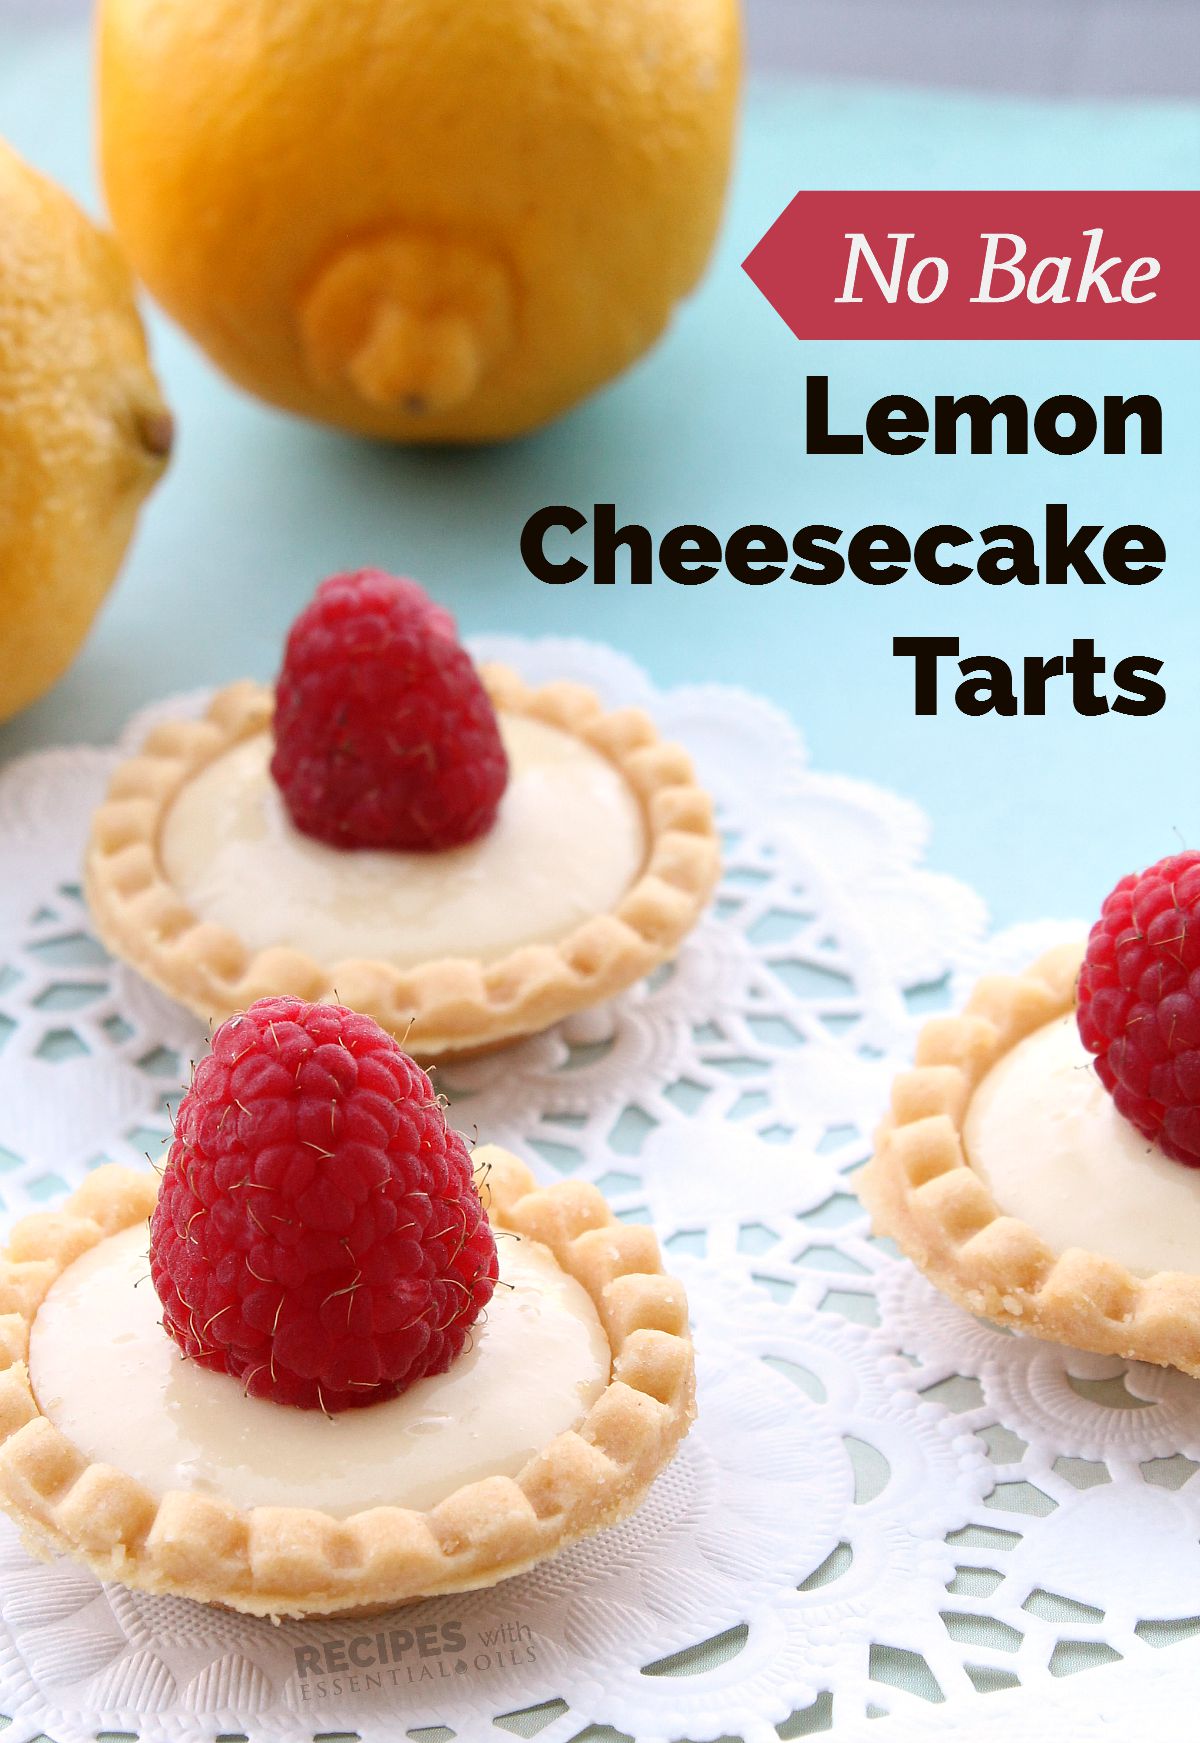 No Bake Lemon Cheesecake Tarts | RecipesWithEssentialOils.com